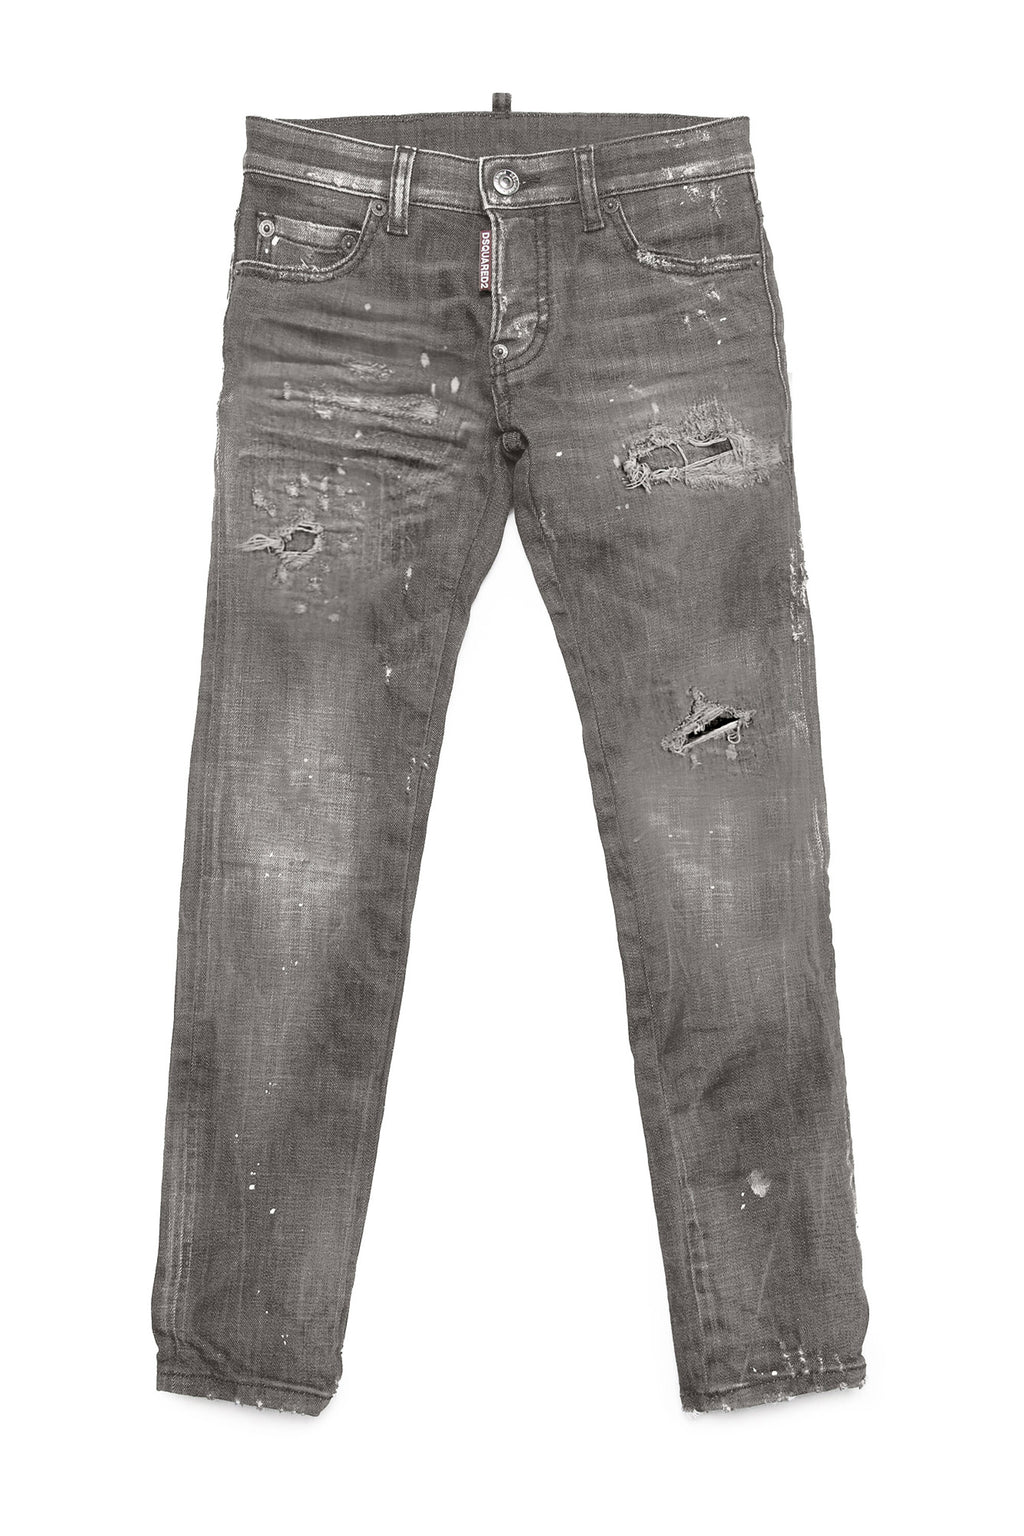 Jeans Slim straight grigio sfumato con abrasioni e macchie